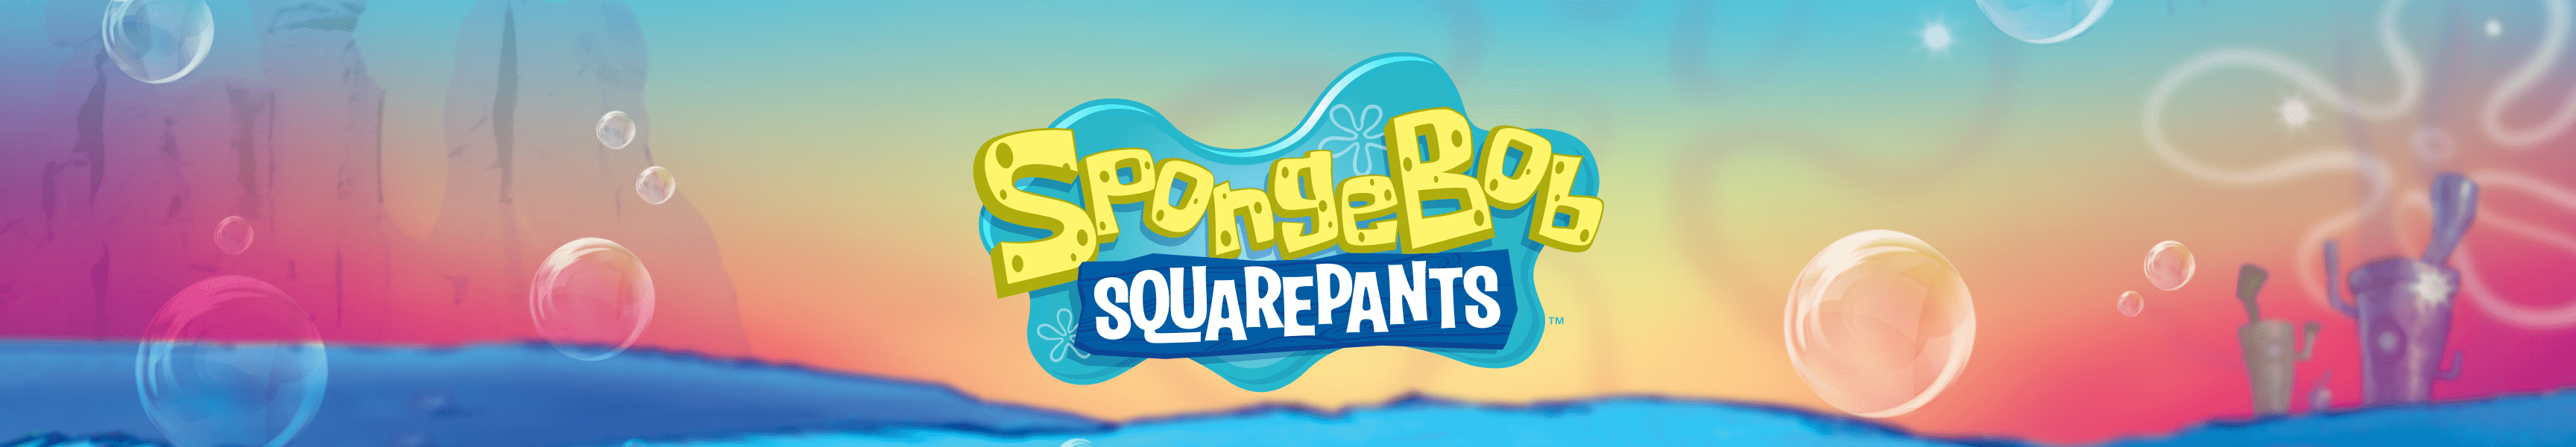 SpongeBob SquarePants Squidward